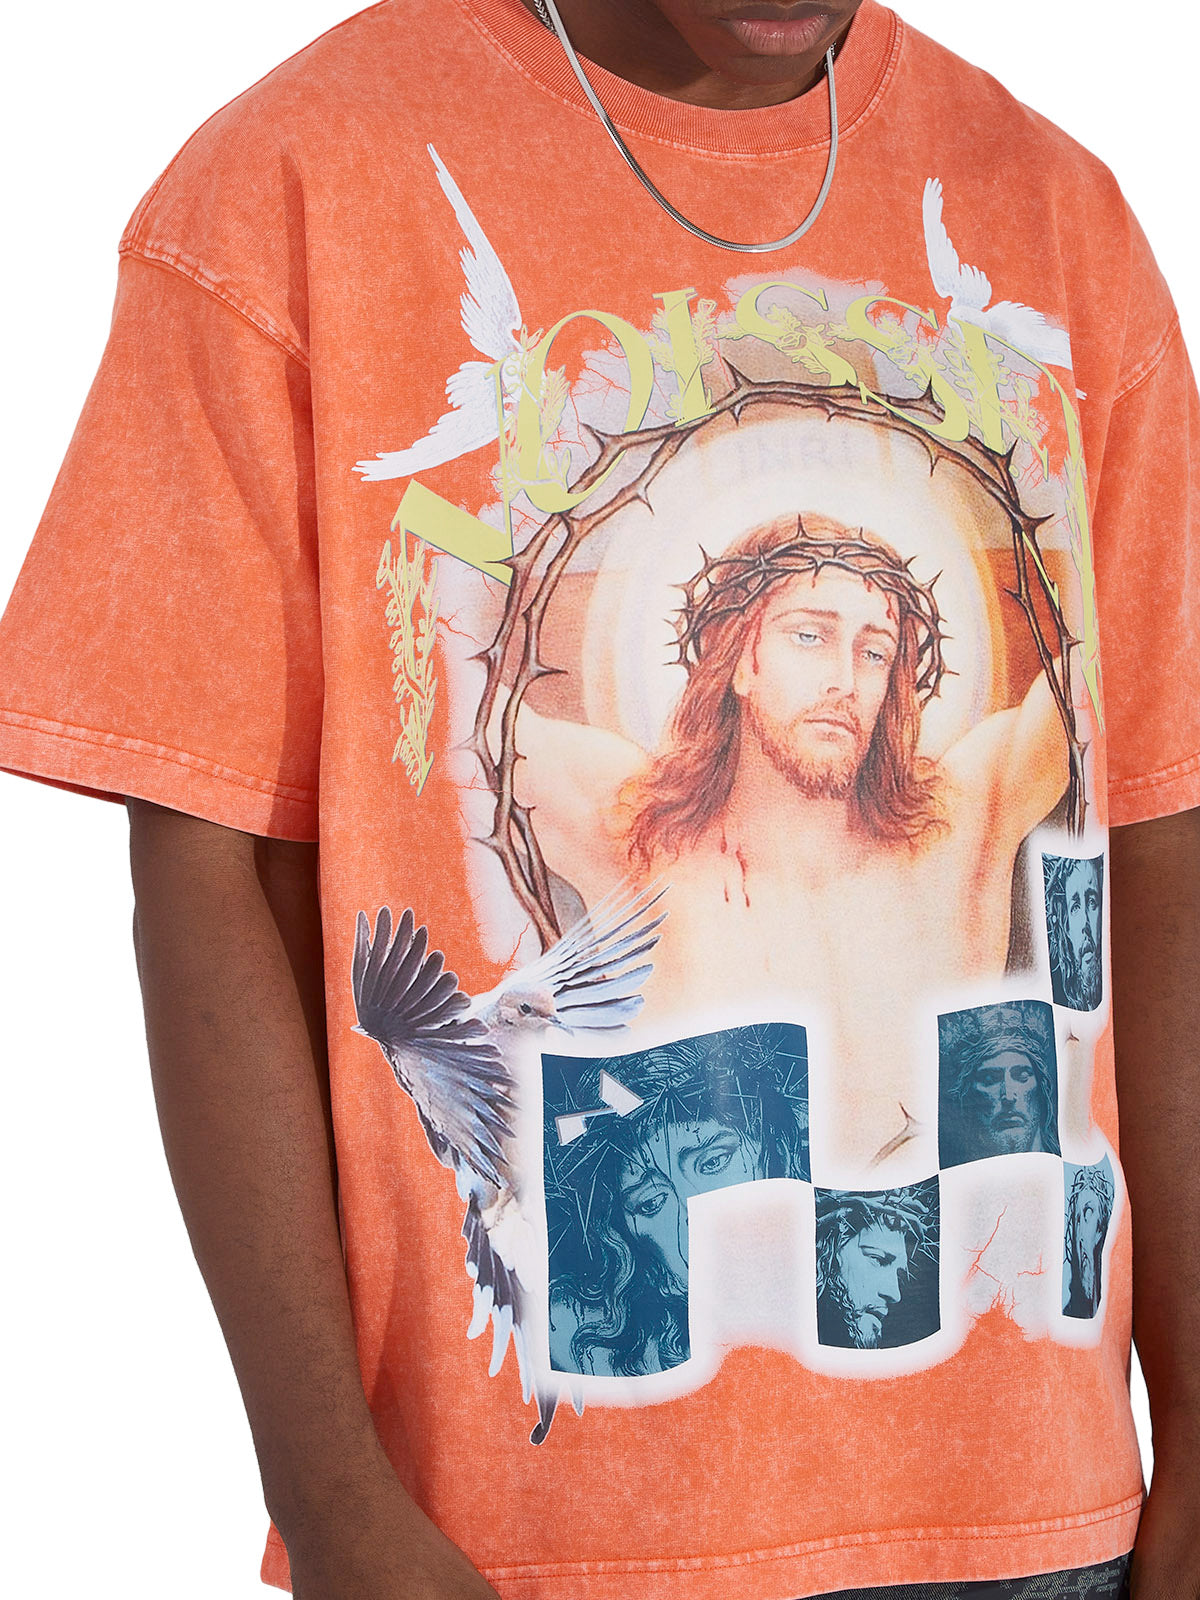 OBSTACLES & DANGERS© Jesus & Peace Dove T-shirt